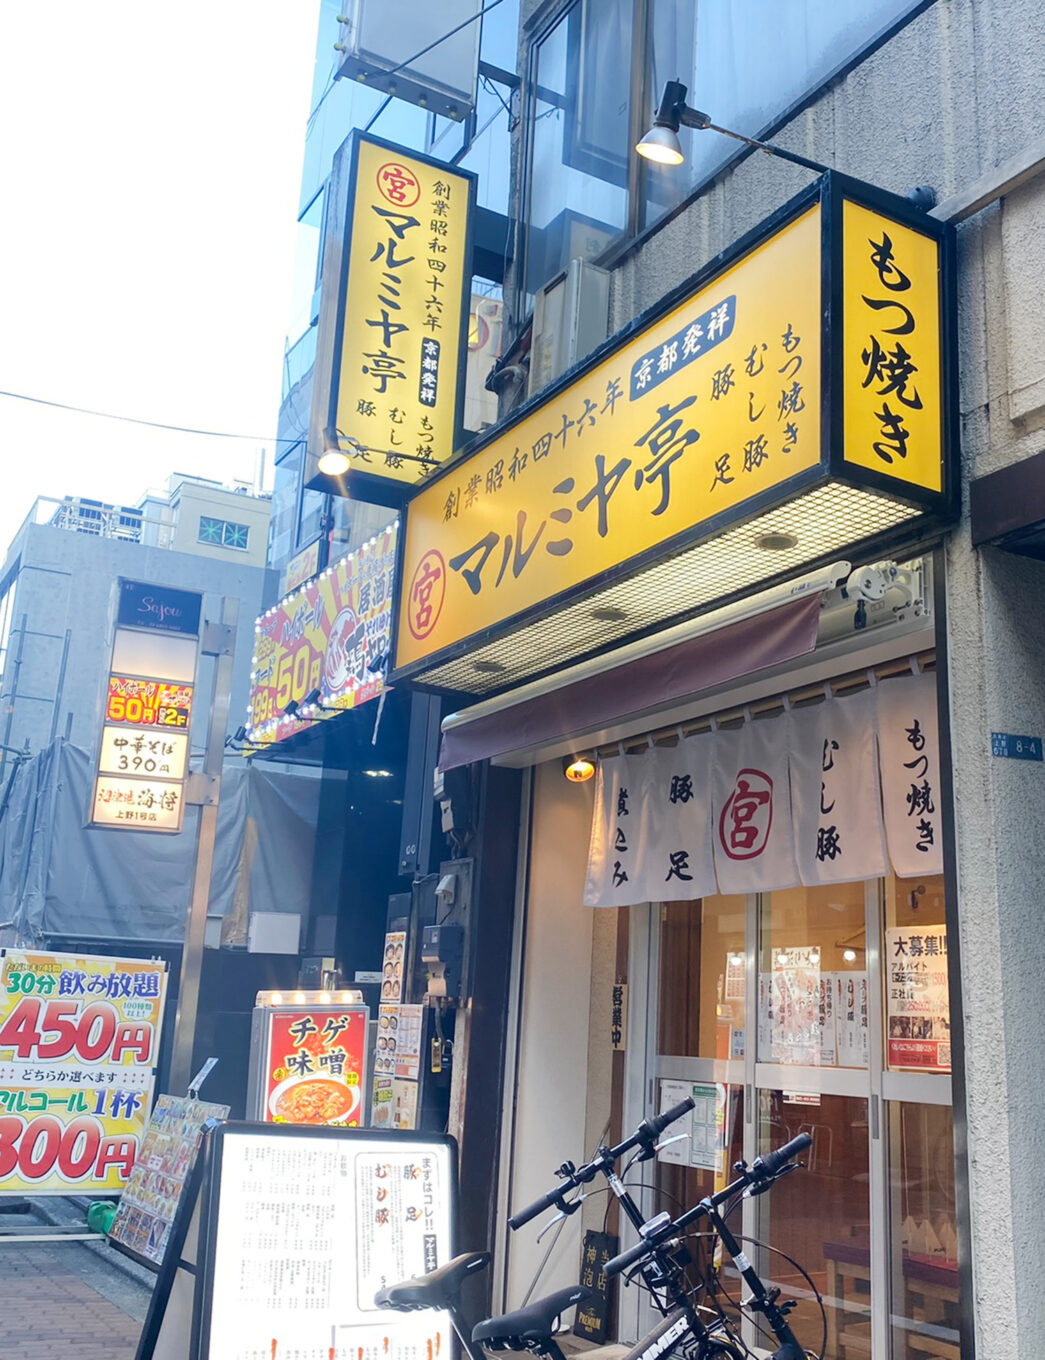 上野 マルミヤ亭 一人焼肉にもおすすめ 焼肉 豚料理が楽しめる京都の老舗もつ焼き居酒屋 せんべろnet